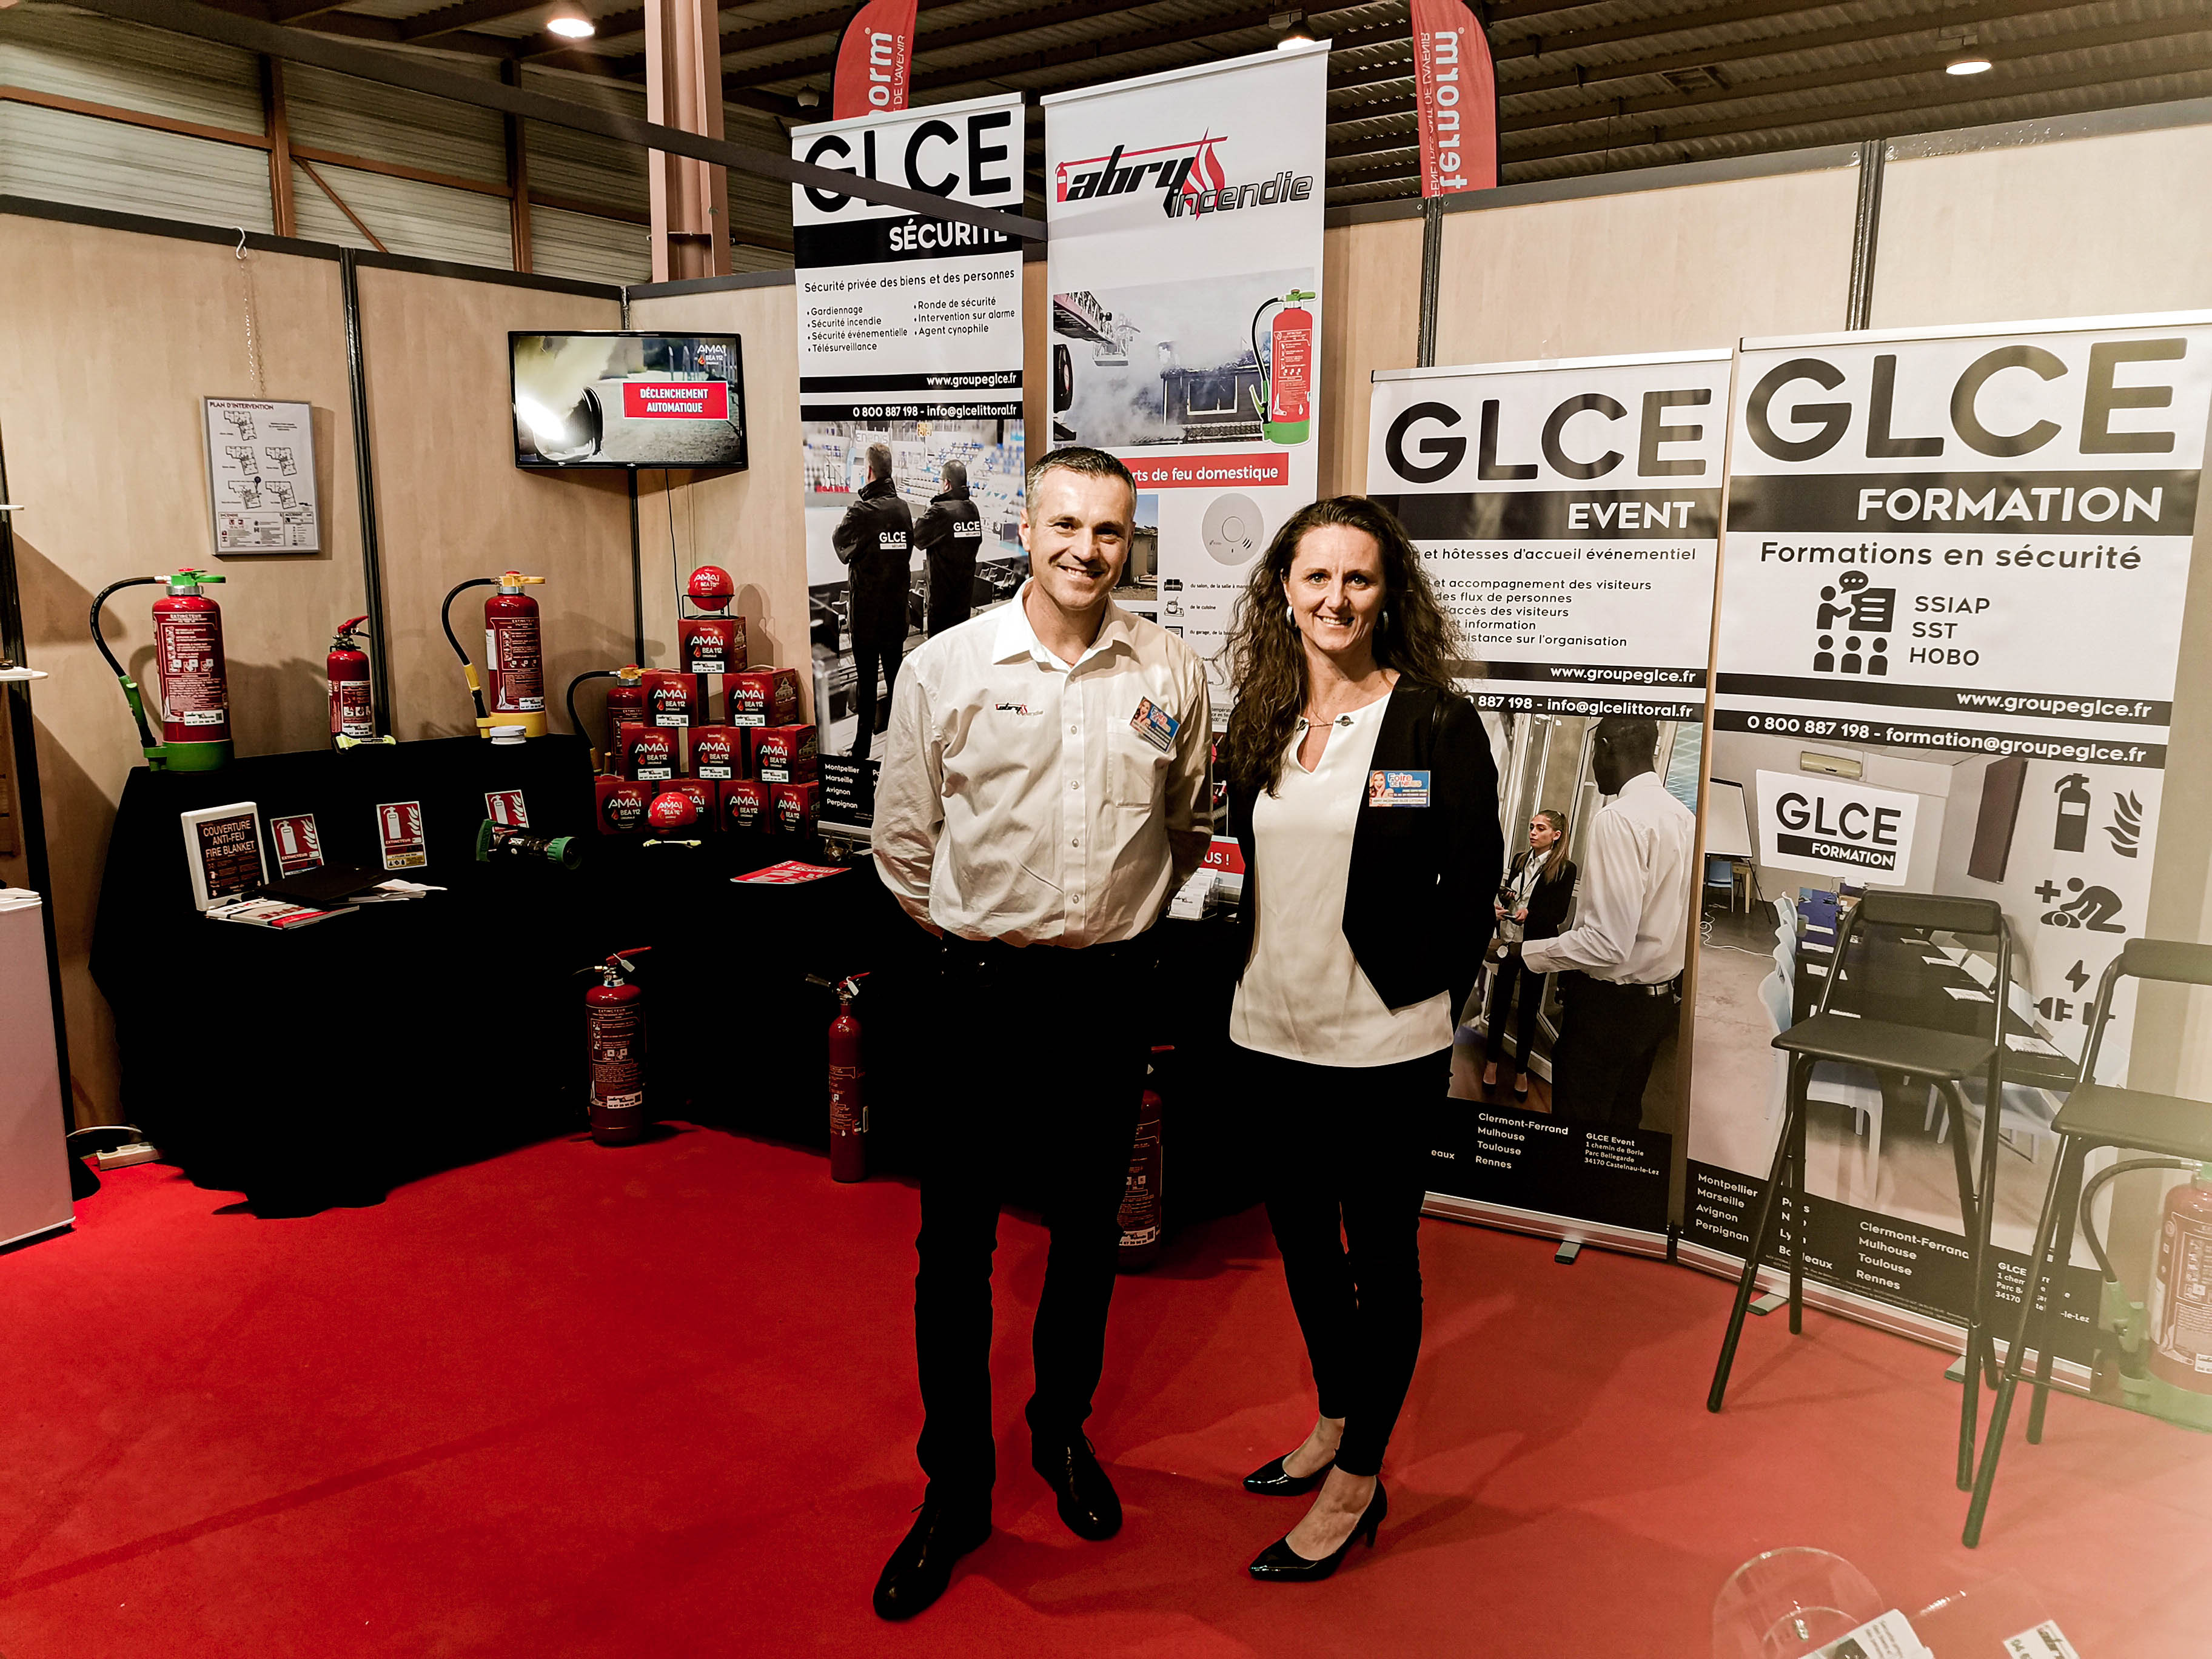 GLCE Sécurité, GLCE Formation, GLCE Event à la Foire de Nîmes